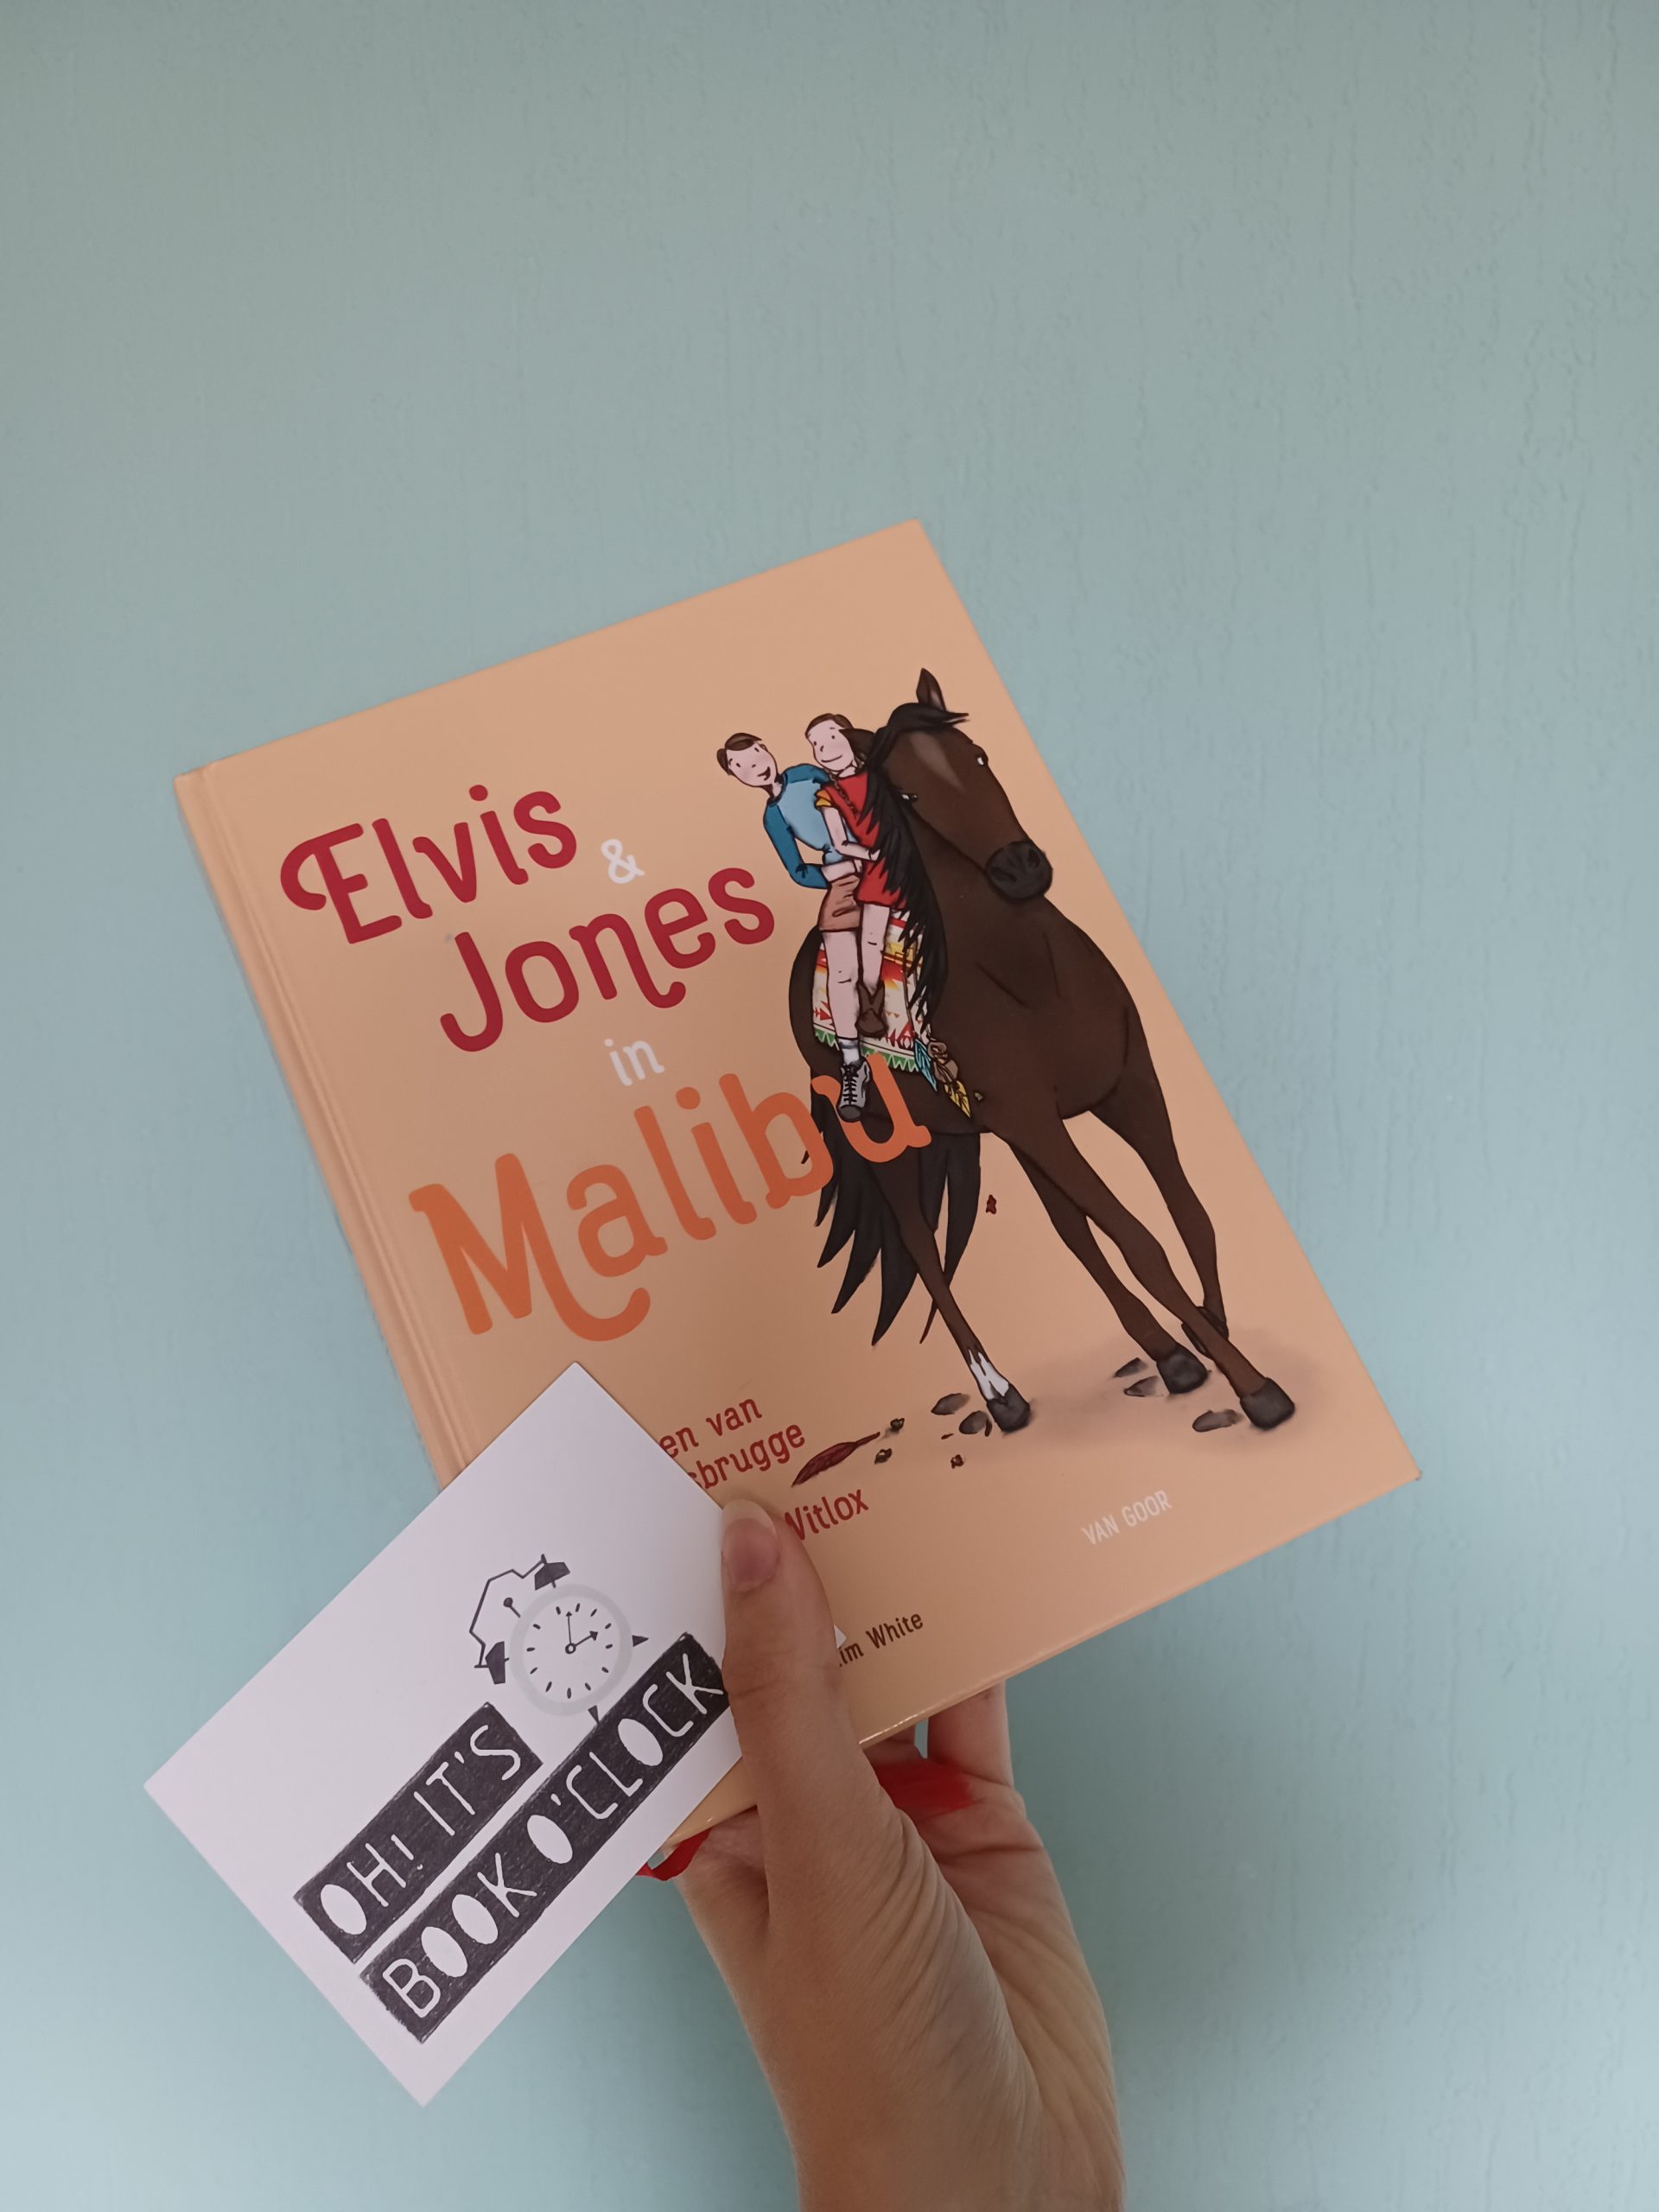 Boekrecensie: Elvis & Jones in Malibu – Jeroen van Koningsbrugge & Marie-Claire Witlox